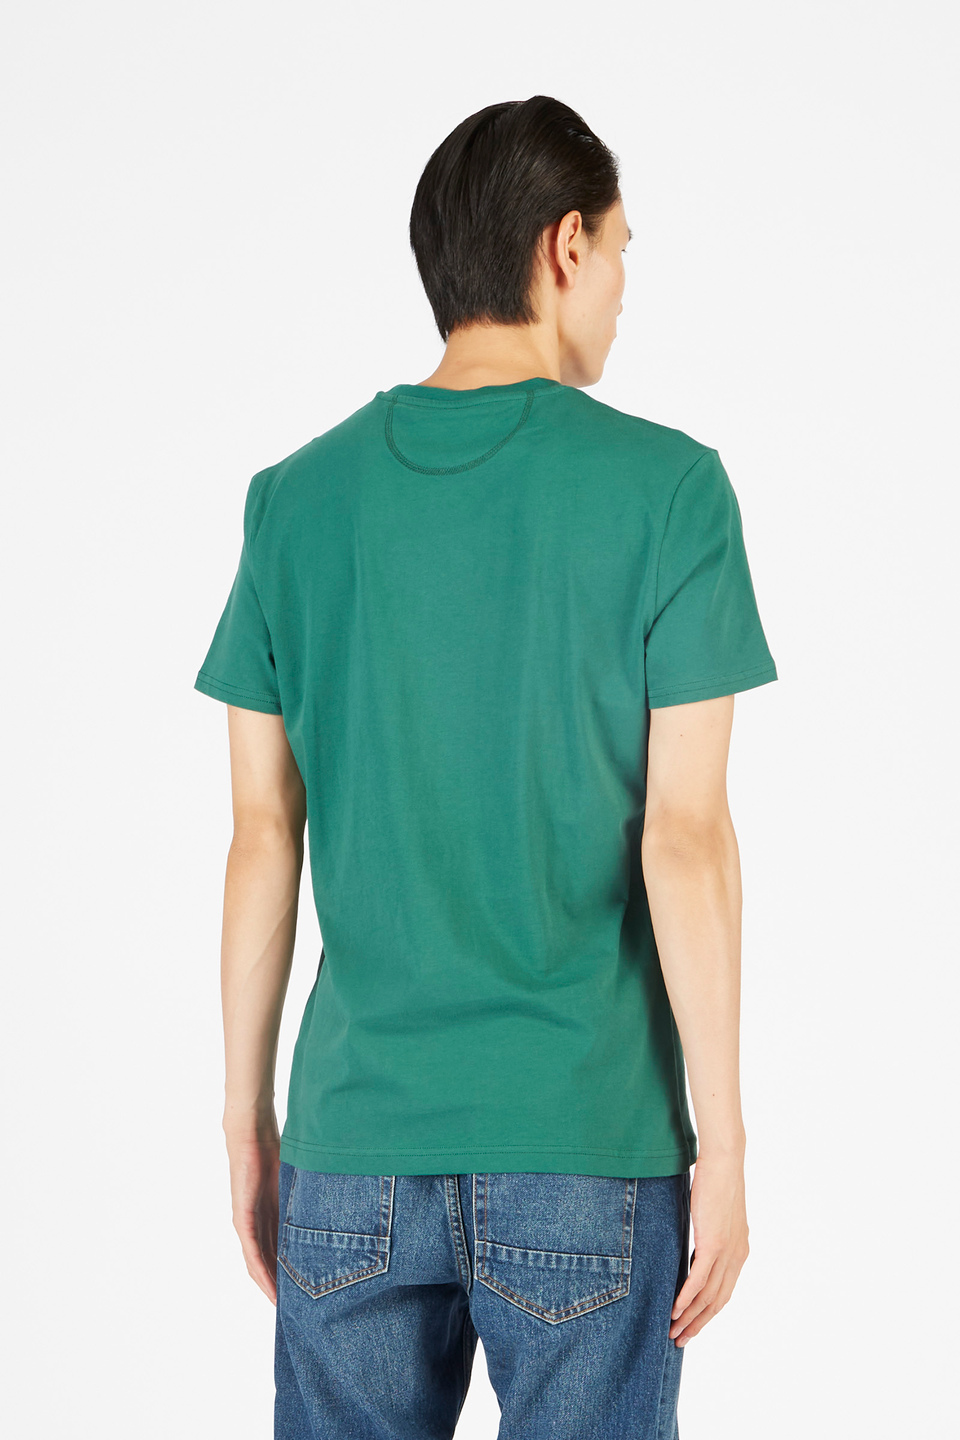 T-shirt col ras du cou à manches courtes pour hommes en coton 100 % coupe classique | La Martina - Official Online Shop